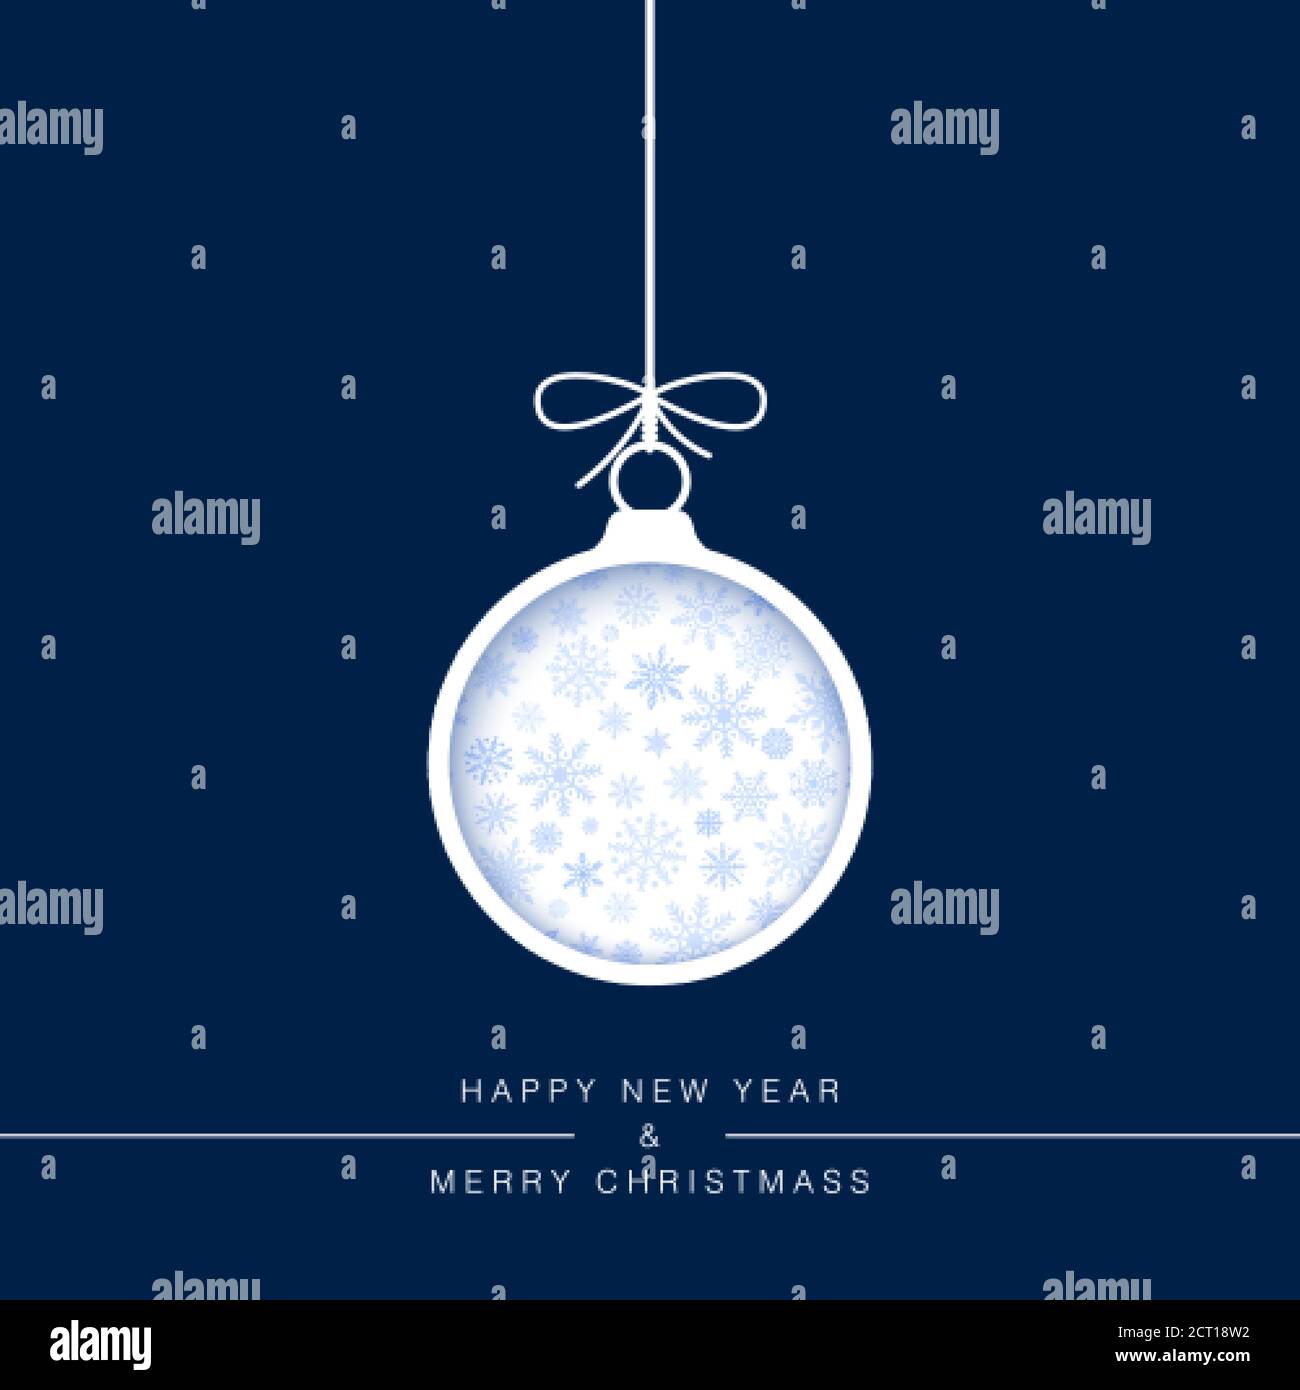 Modello biglietto di auguri per l'anno nuovo. Taglia la palla di Natale di carta su sfondo blu con fiocchi di neve. Elementi decorativi per le vacanze. Vettore Illustrazione Vettoriale